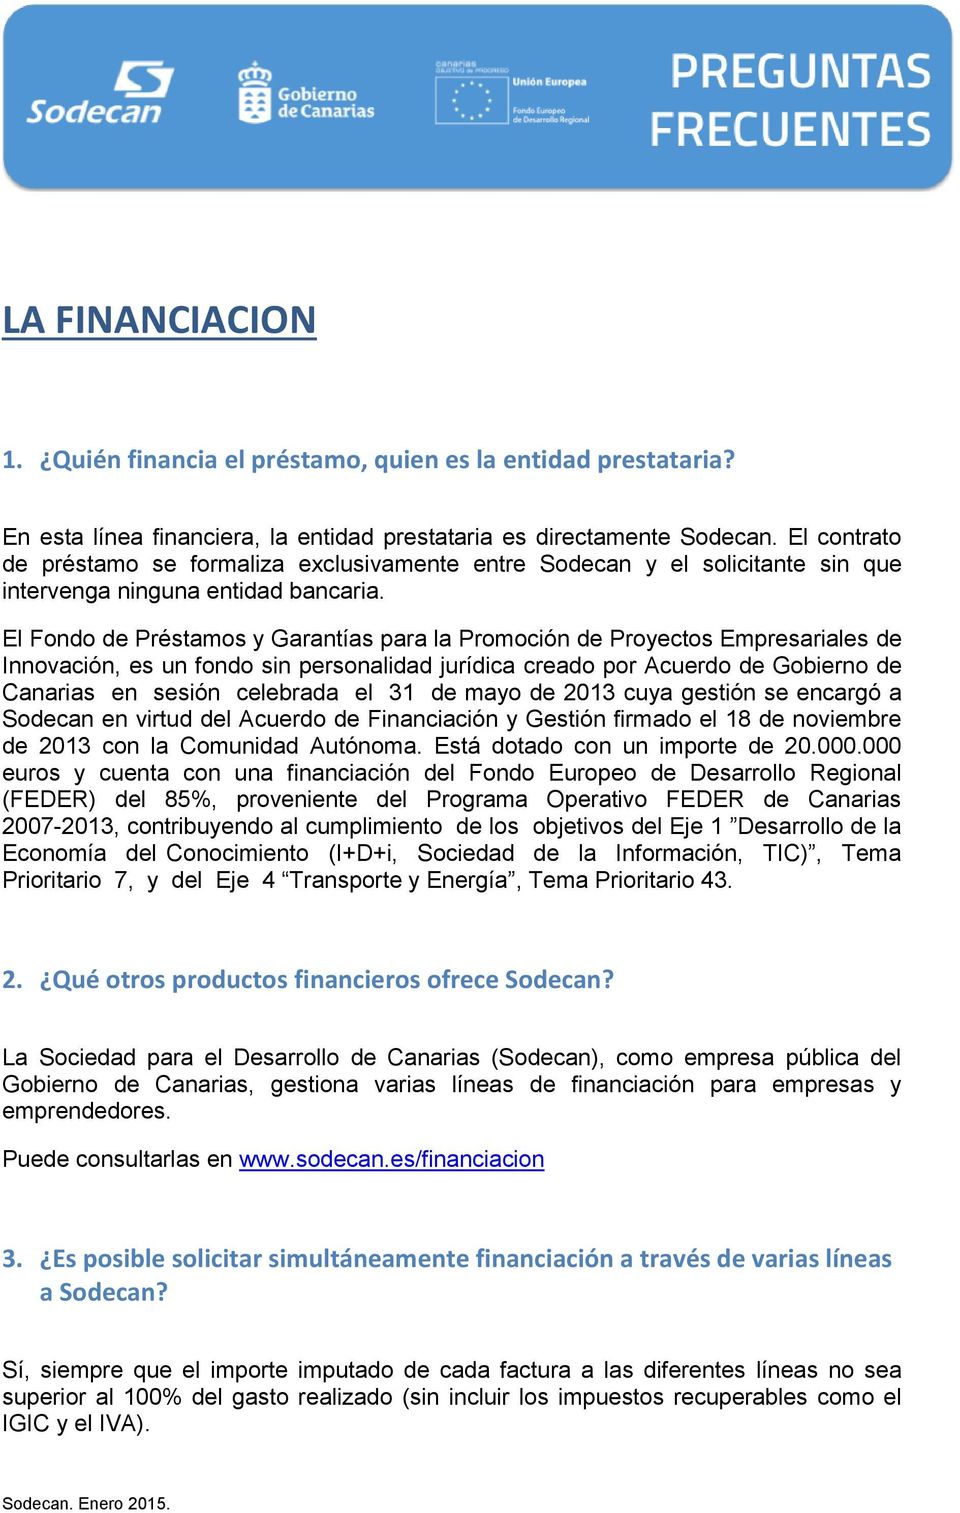 El Fondo de Préstamos y Garantías para la Promoción de Proyectos Empresariales de Innovación, es un fondo sin personalidad jurídica creado por Acuerdo de Gobierno de Canarias en sesión celebrada el